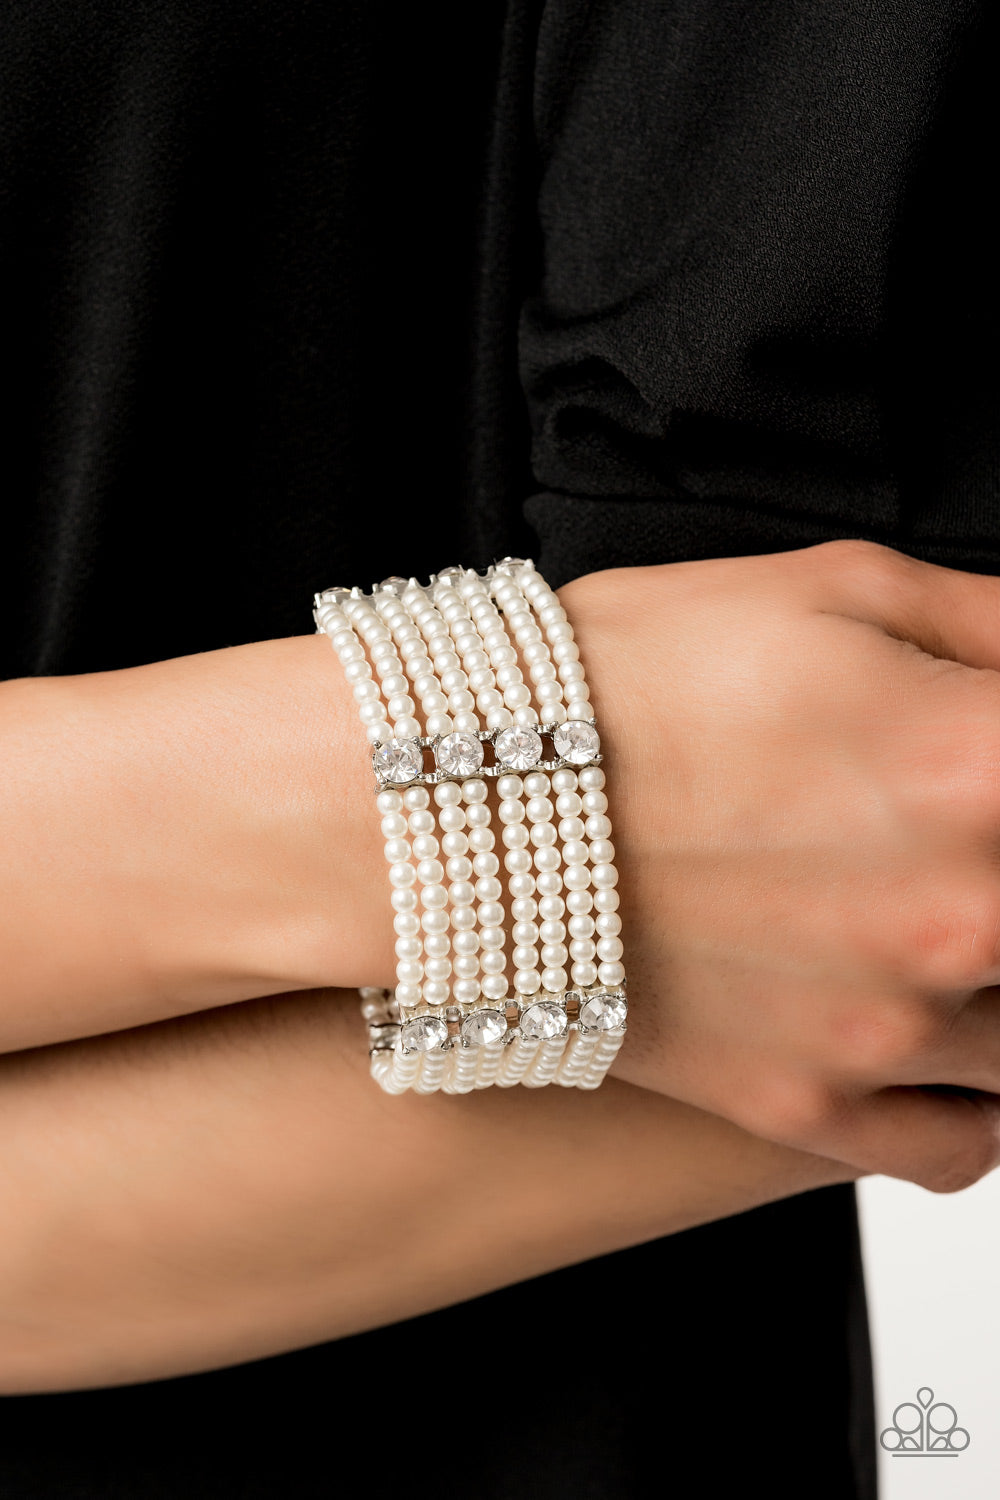 Get In Line - White pearl bracelet